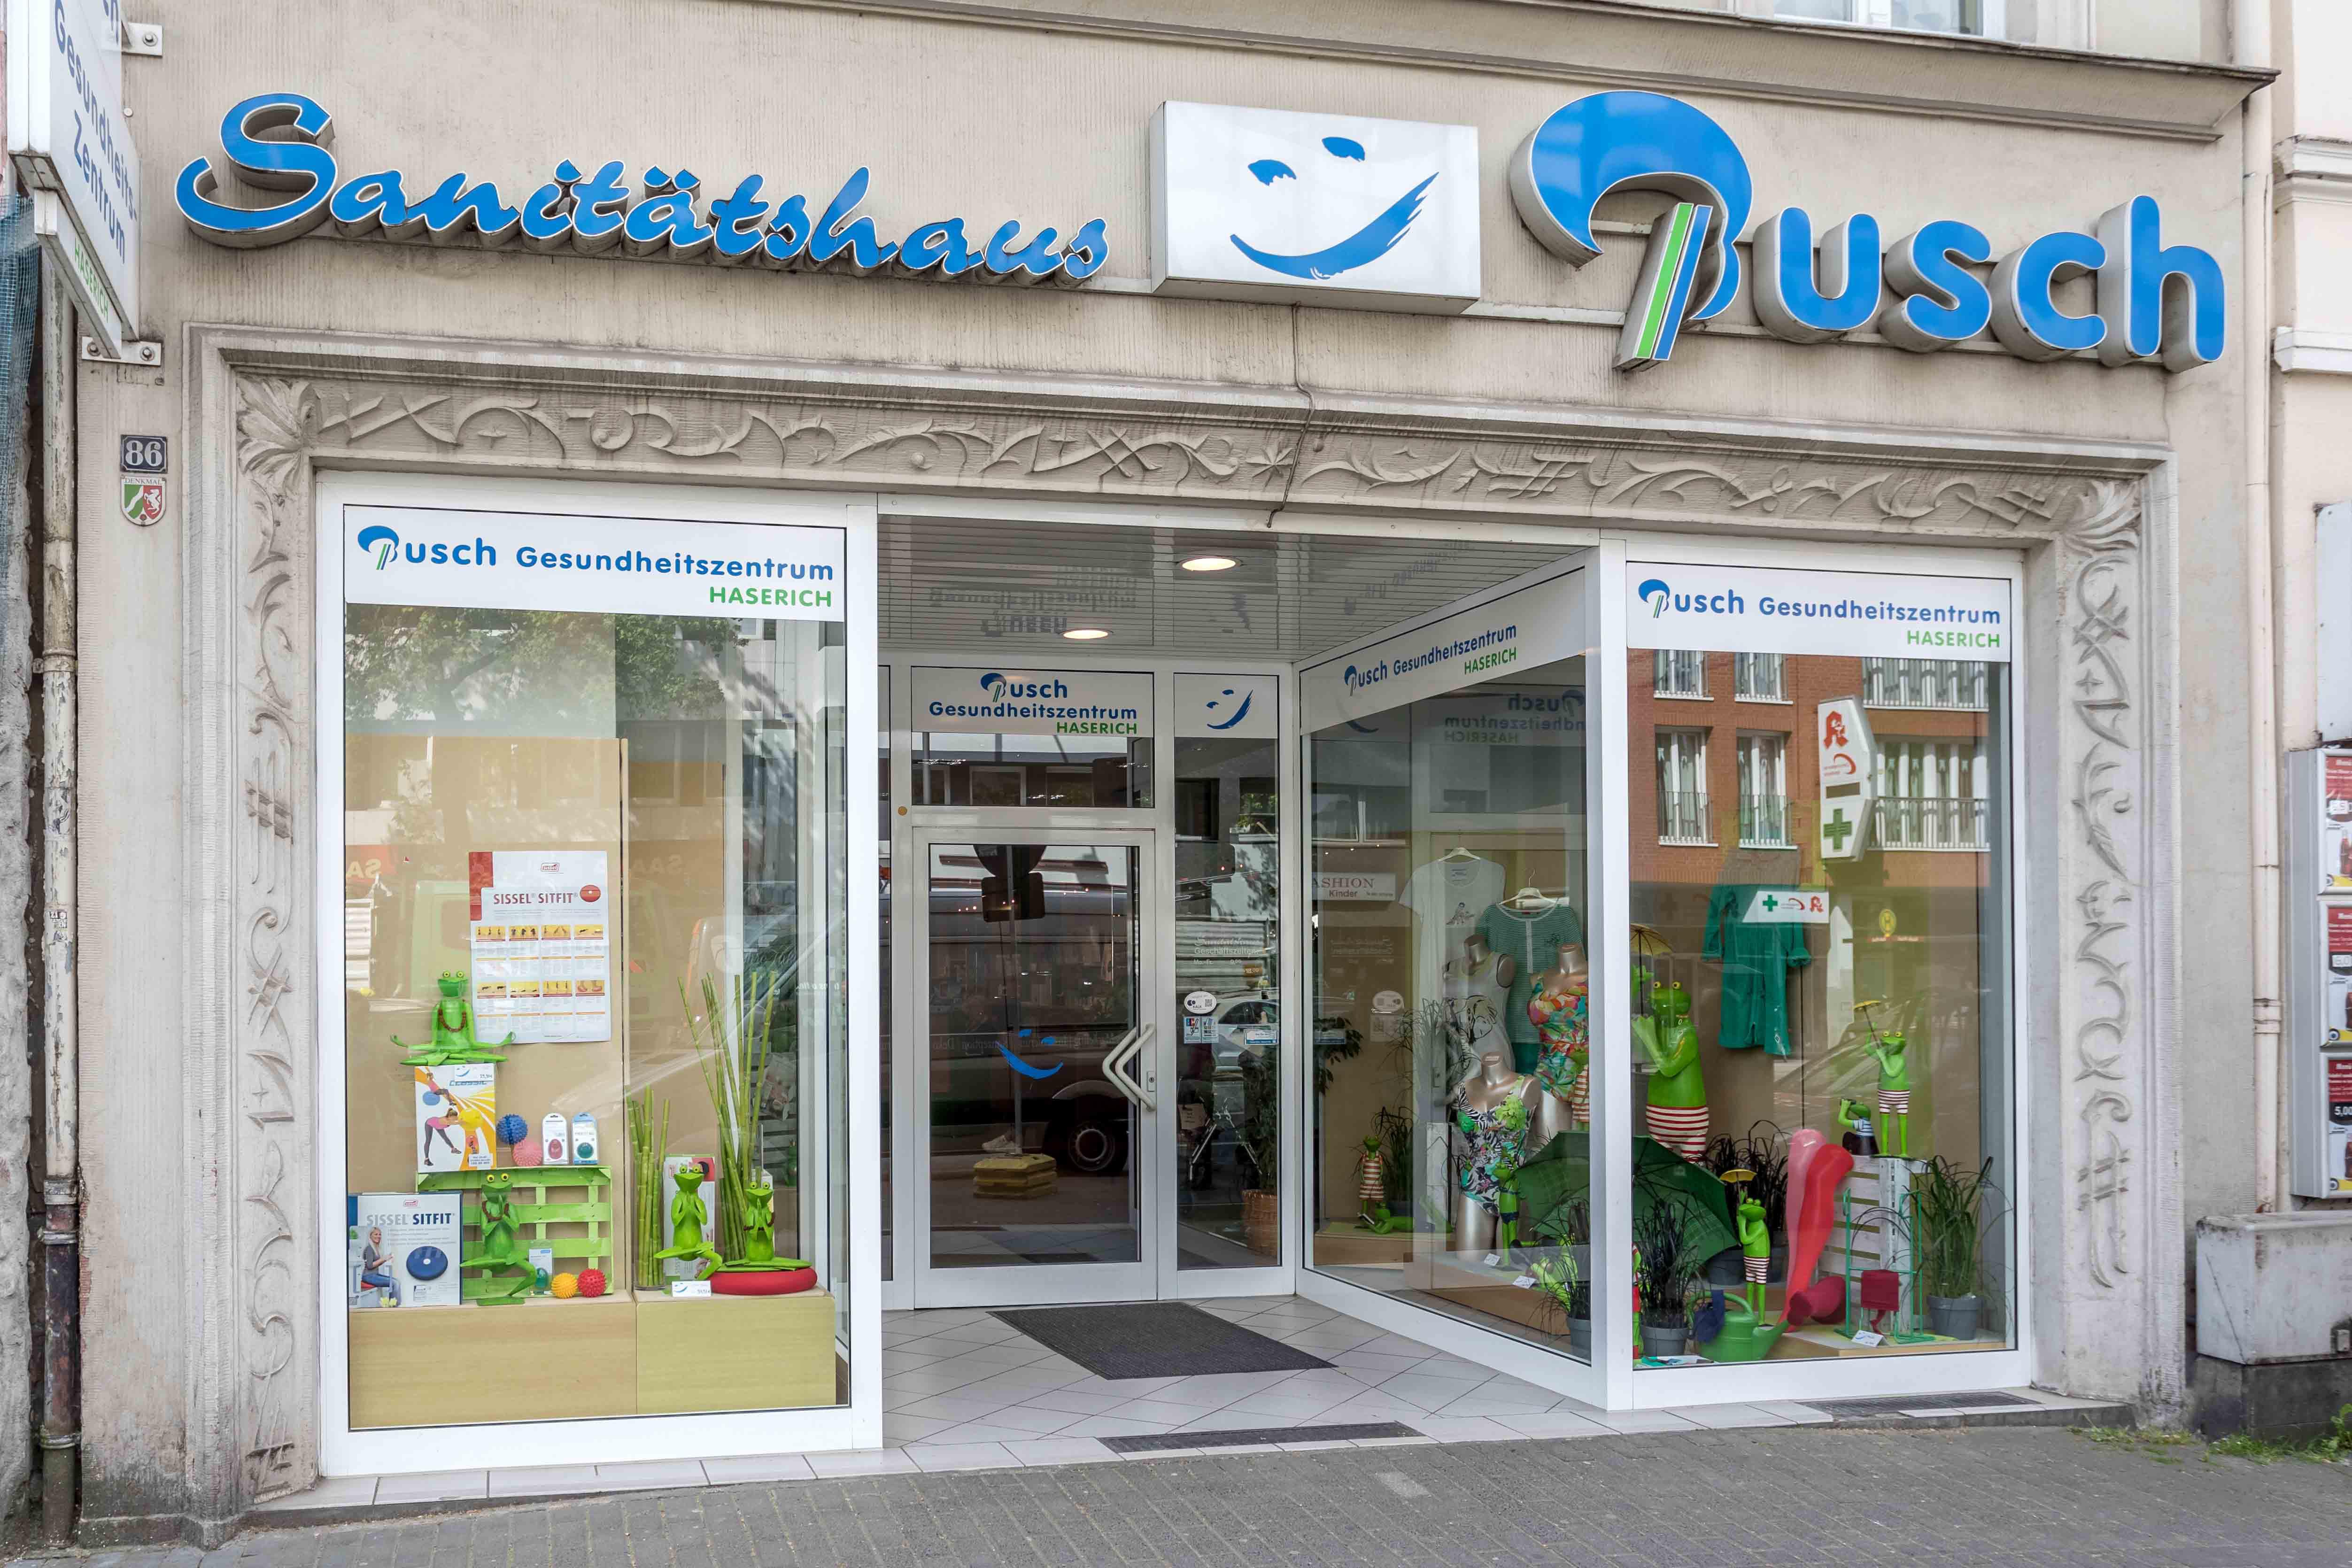 Busch Gesundheits-Zentrum Unterwagner GmbH & Co. KG